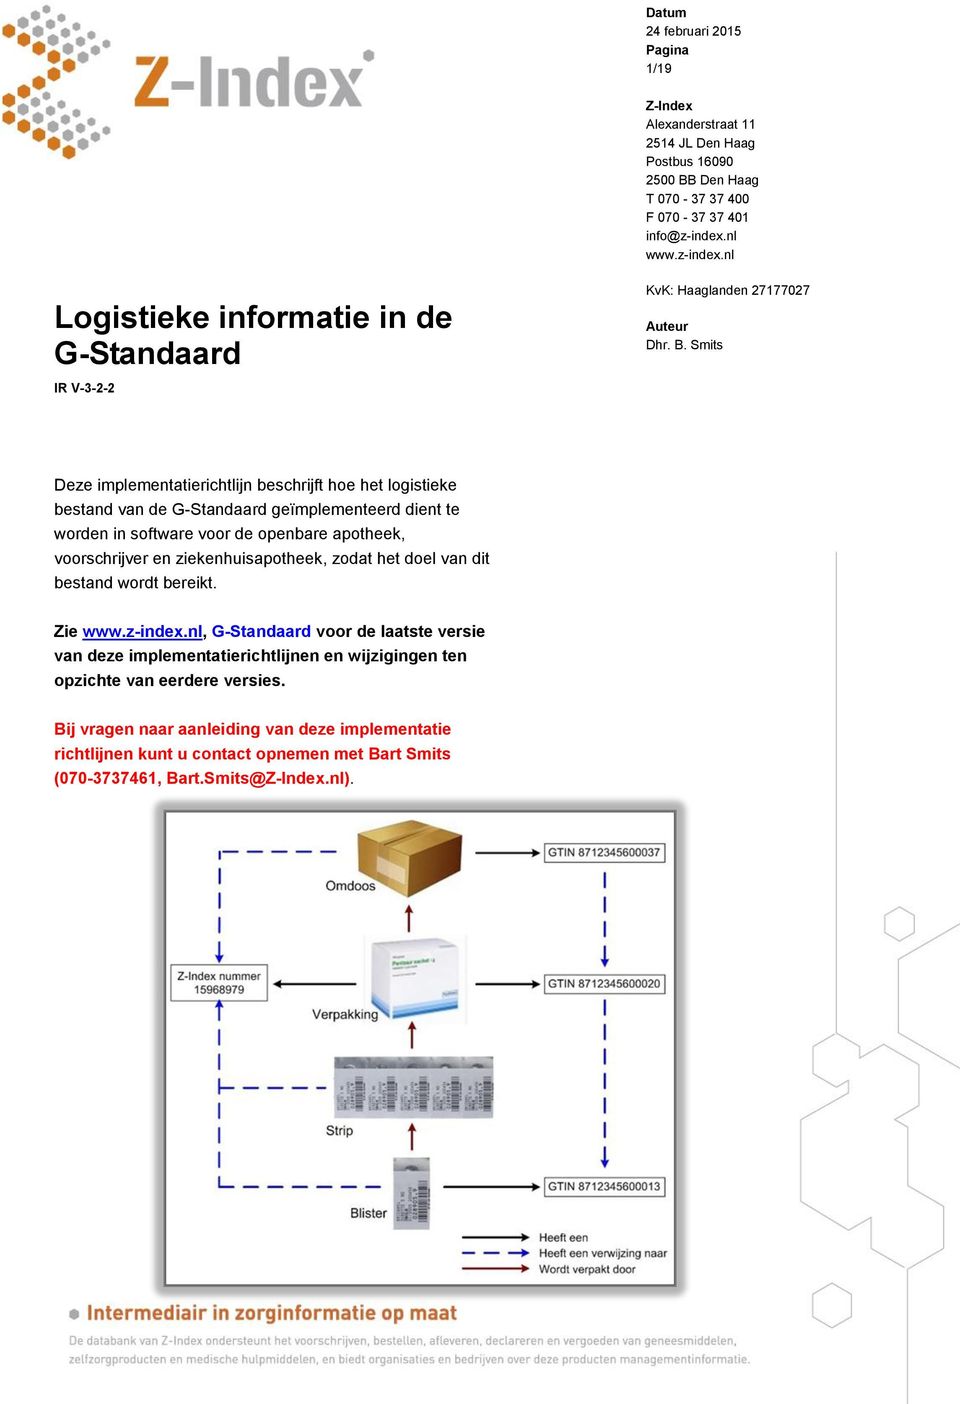 Smits Deze implementatierichtlijn beschrijft hoe het logistieke bestand van de G-Standaard geïmplementeerd dient te worden in software voor de openbare apotheek, voorschrijver en